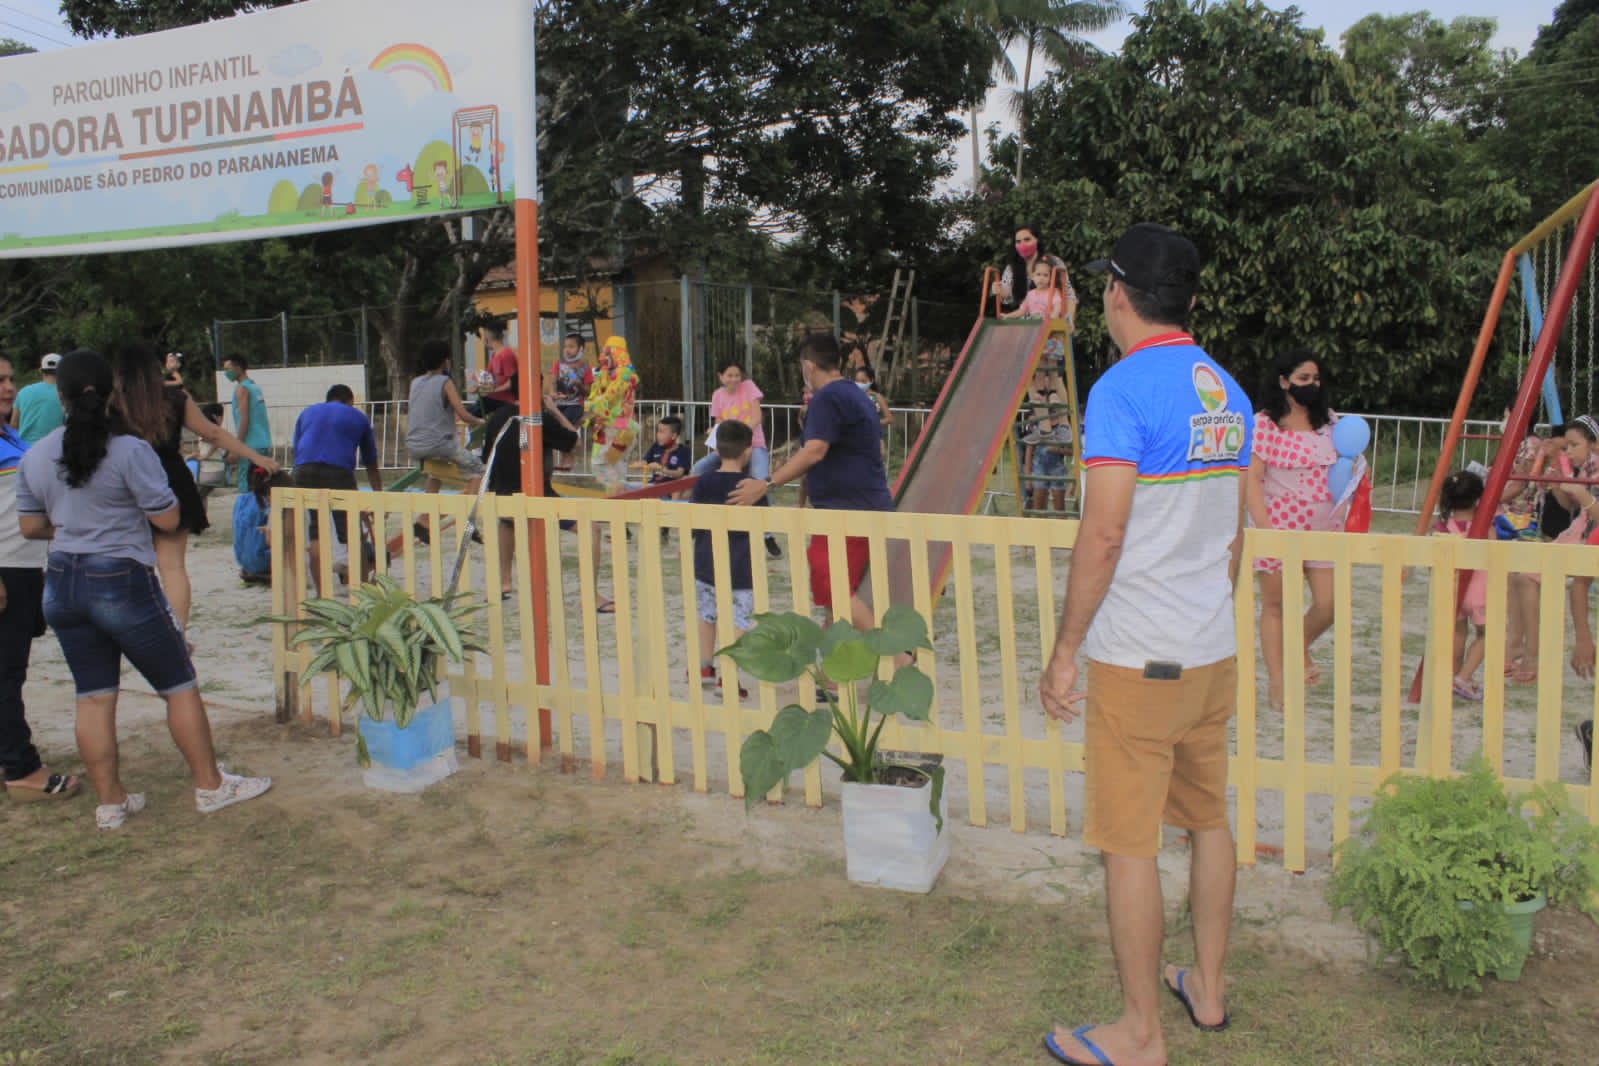 Babá Tupinambá exalta entrega de Parque Infantil na comunidade São Pedro do Parananema